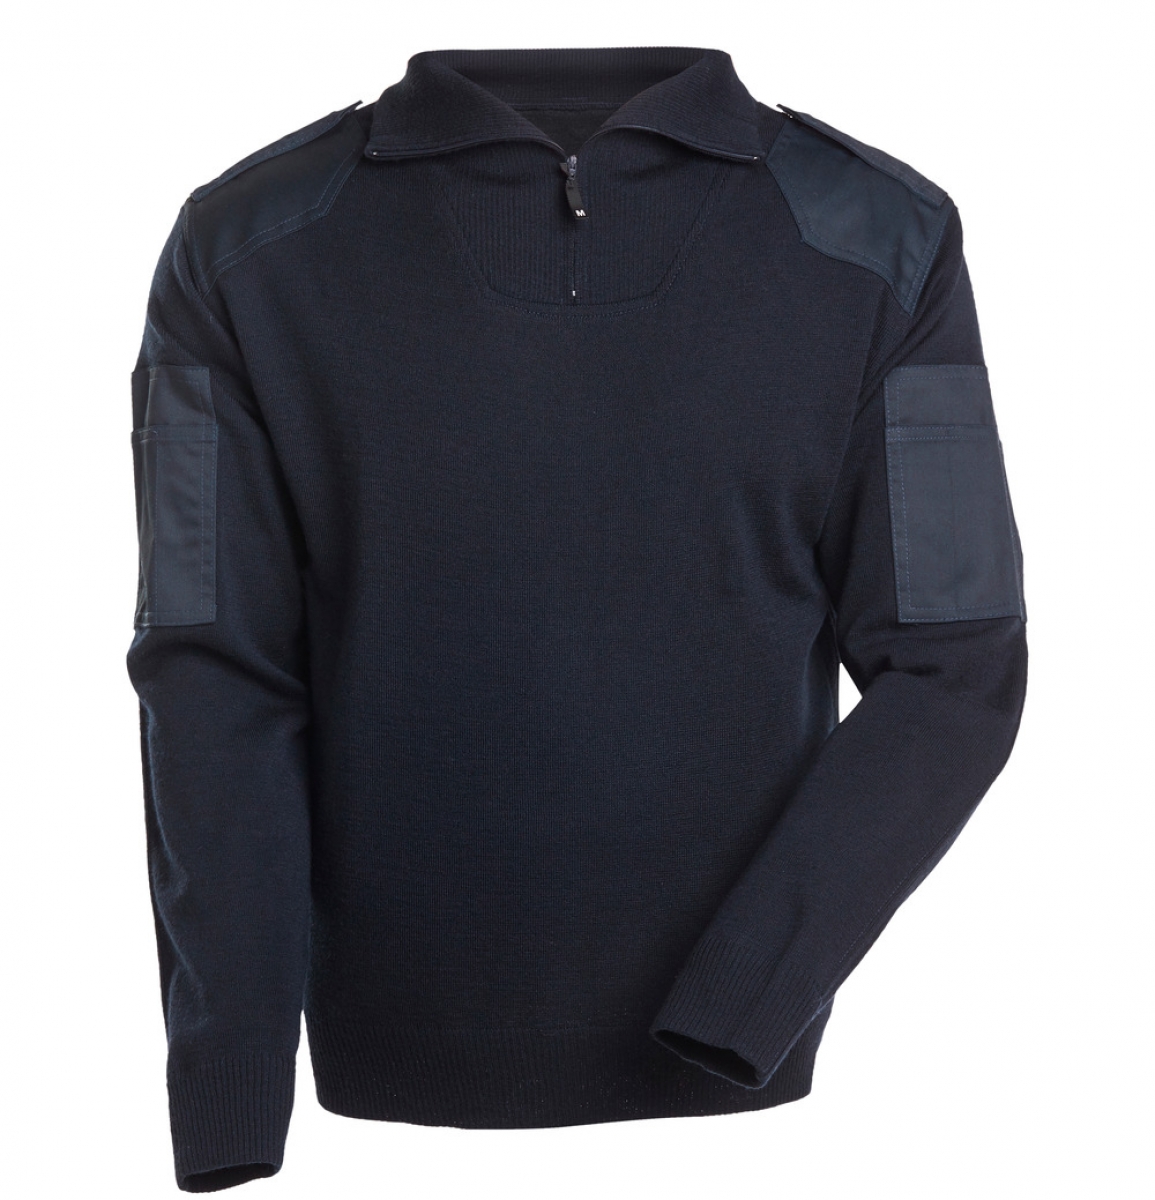 MASCOT-Workwear, Klteschutz, Strickpullover, 240 g/m, schwarzblau